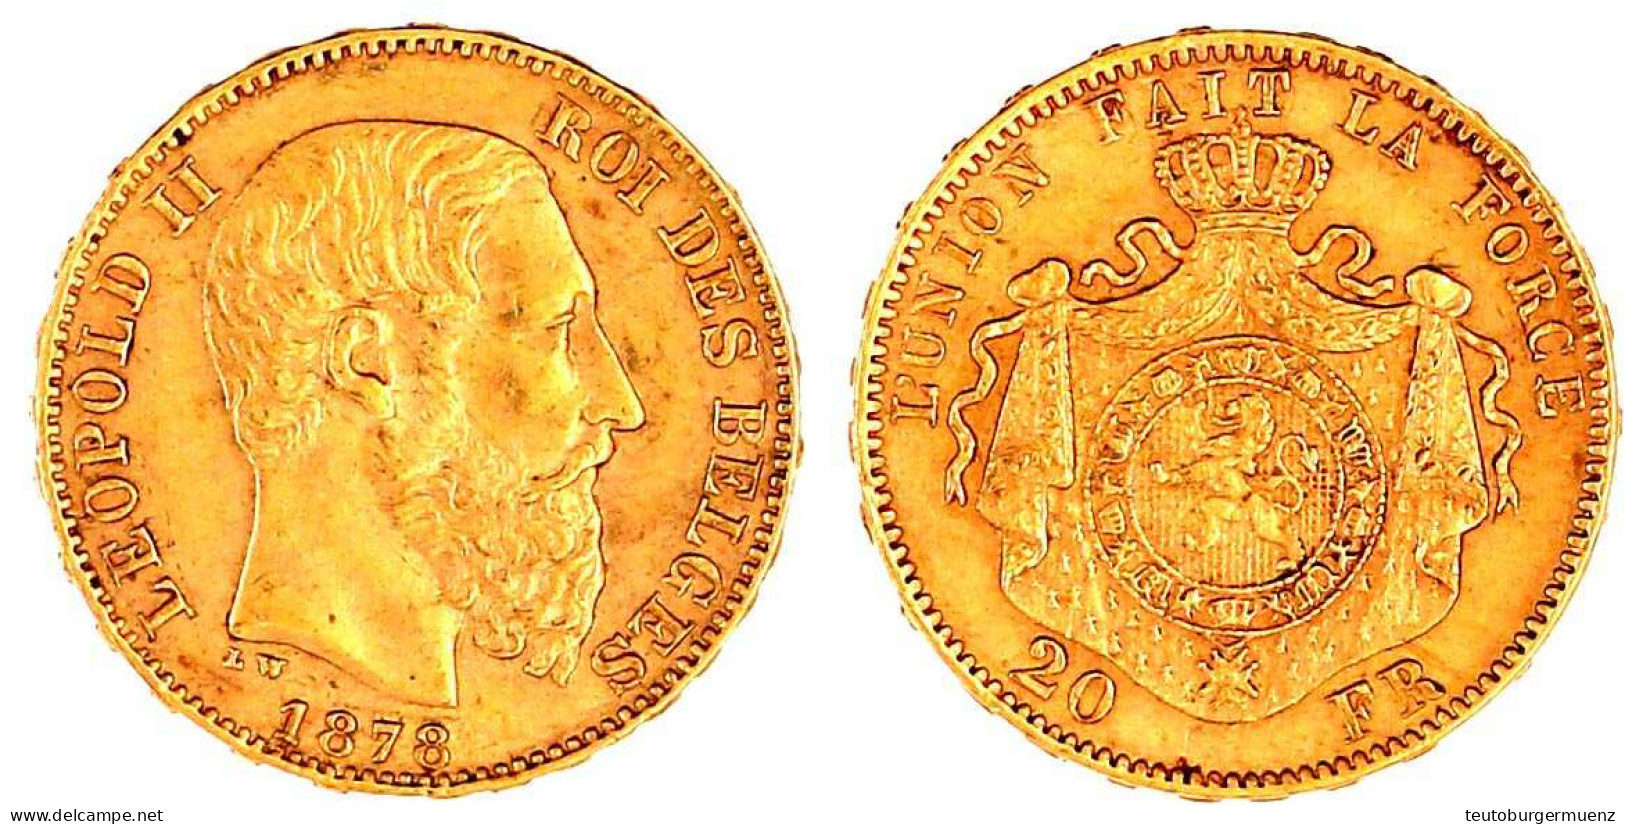 20 Francs 1878. 6,45 G. 900/1000. Vorzüglich. Krause/Mishler 37. - 20 Frank (gold)